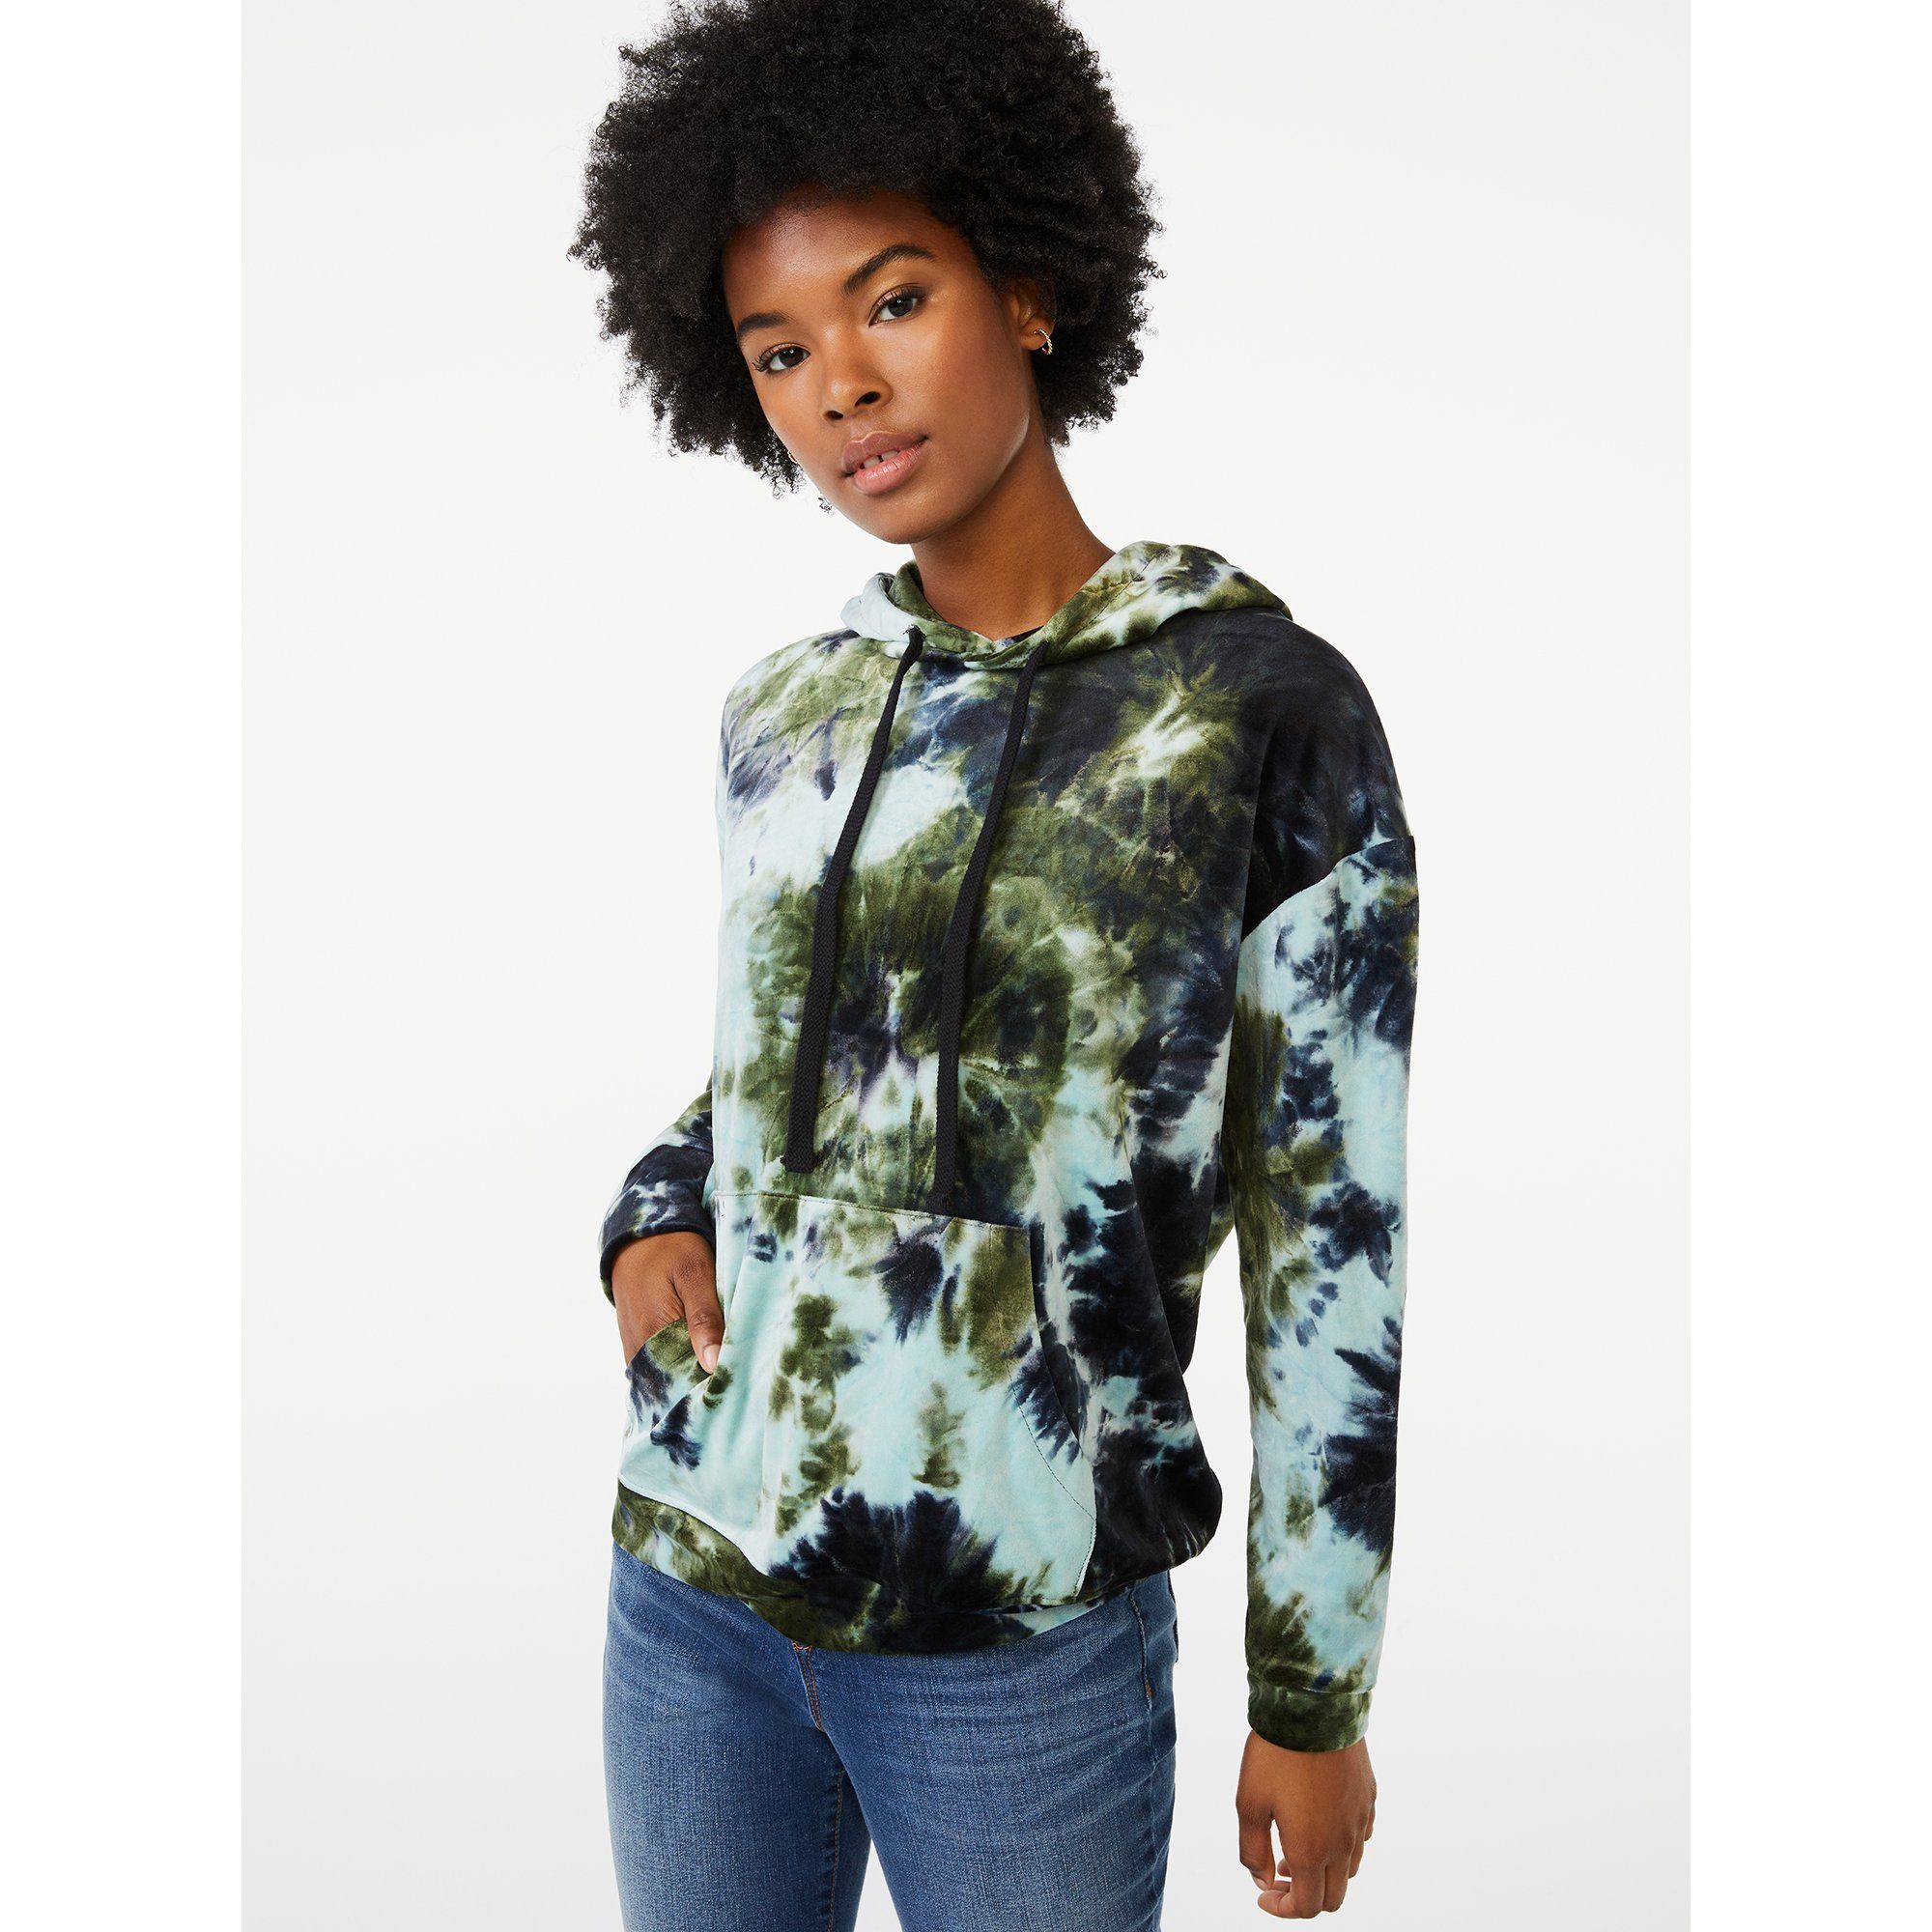 Scoop Women's Velour Sweatshirt | Walmart (US)